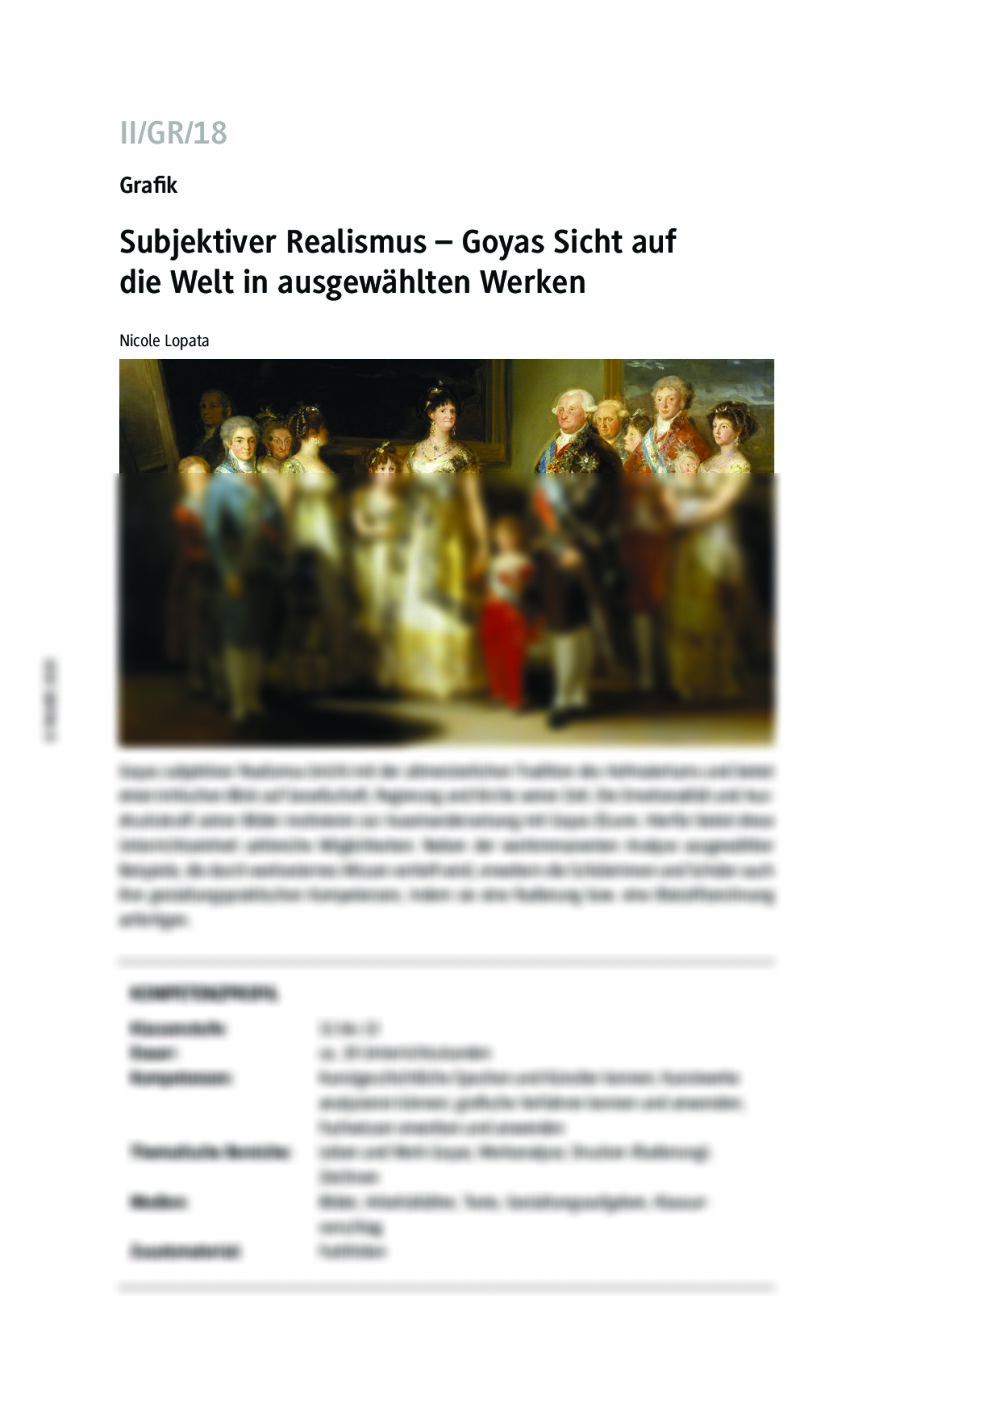 Goyas Sicht auf die Welt in ausgewählten Werken - Seite 1